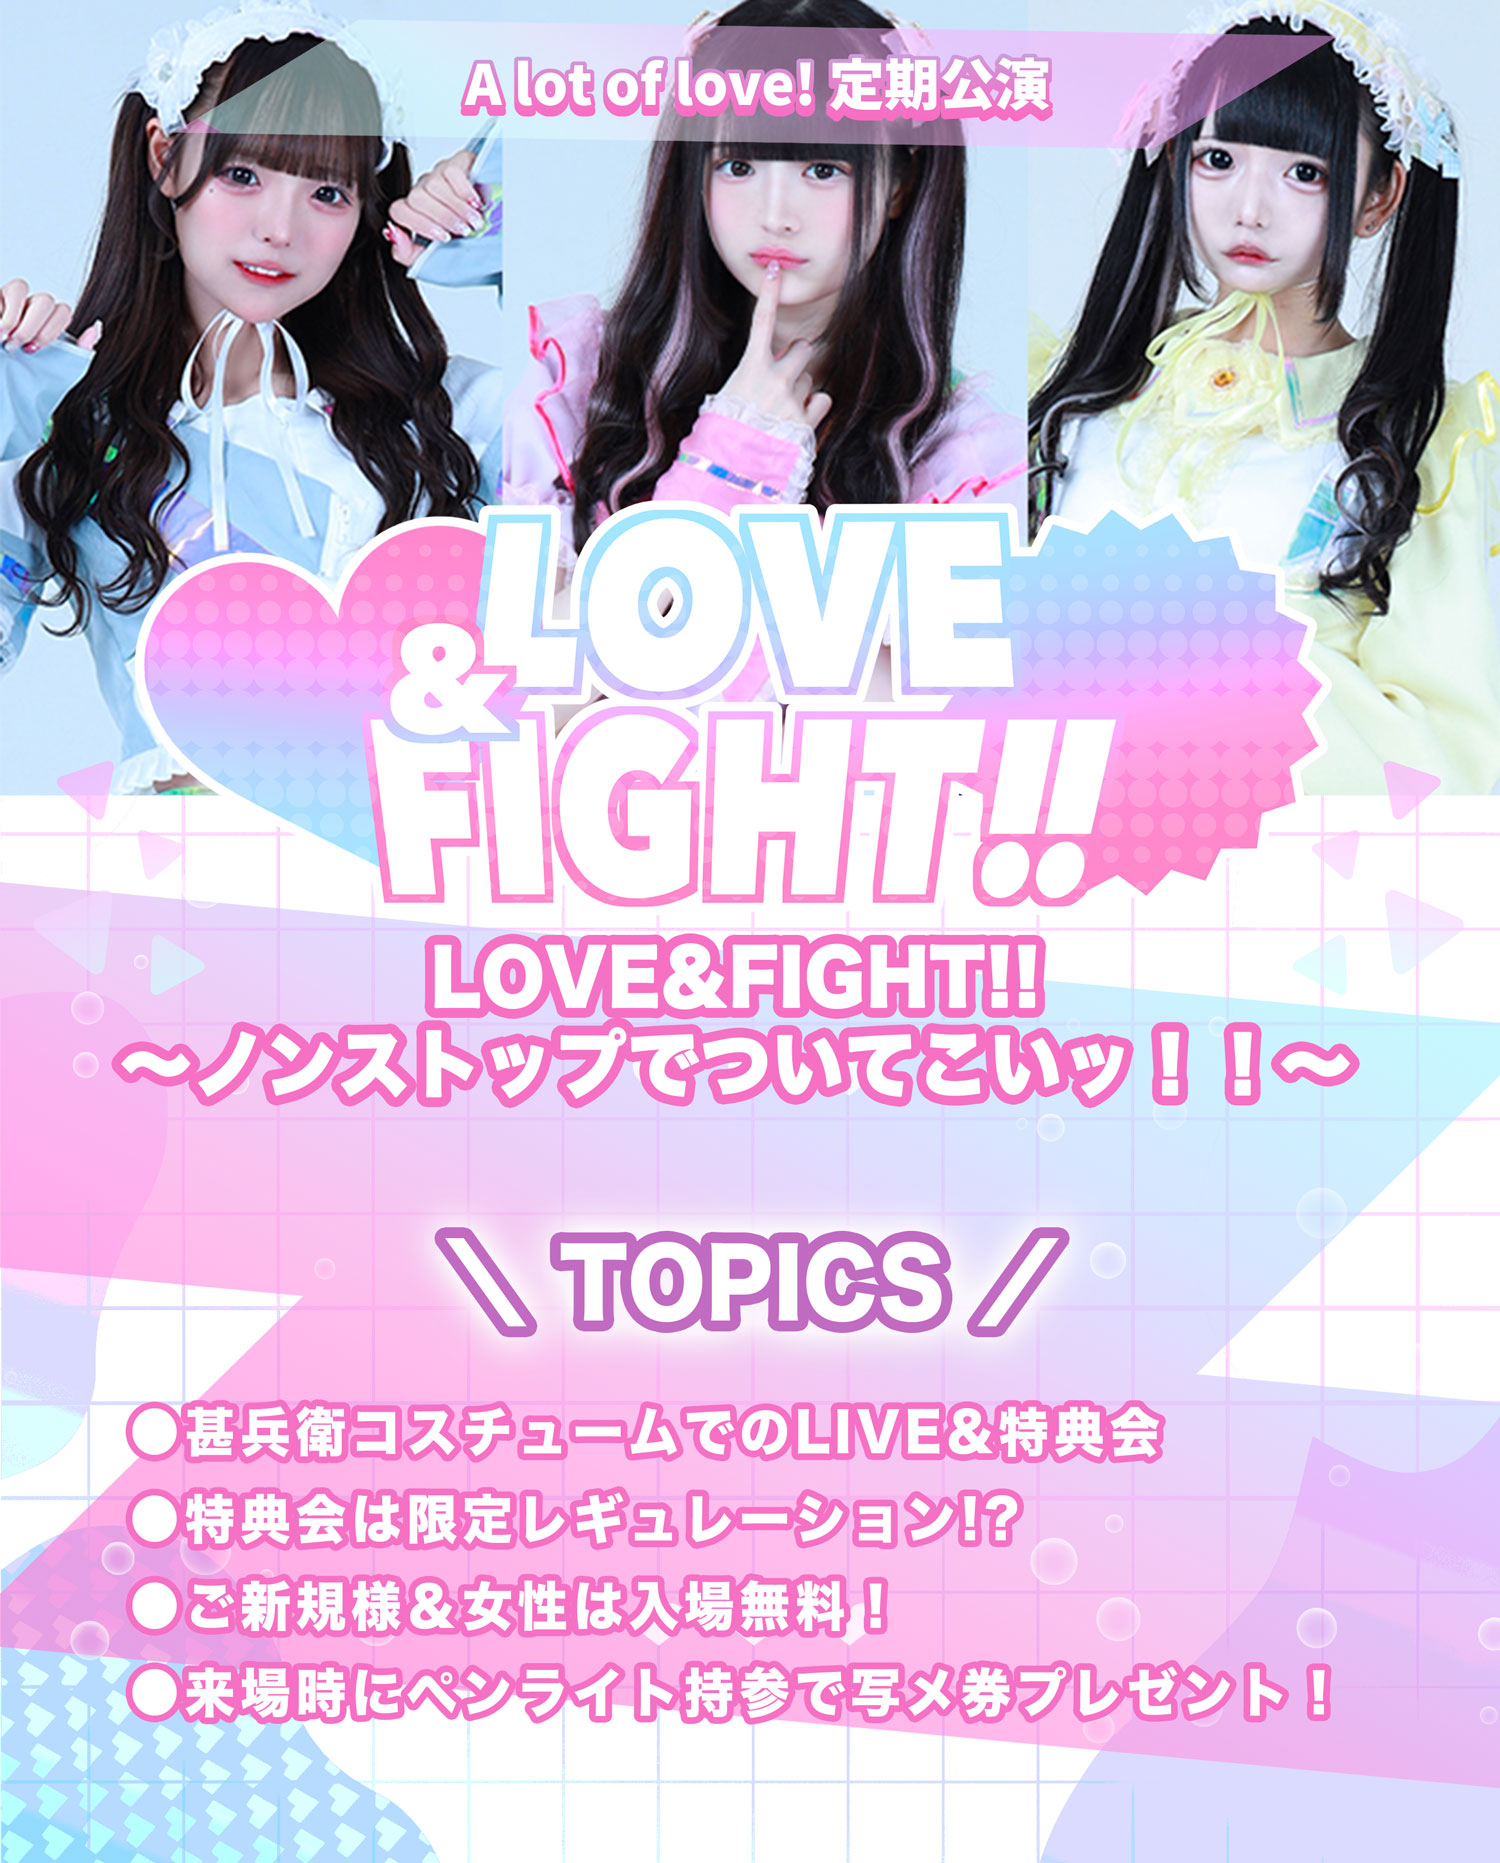 A lot of love! 定期公演「LOVE&FIGHT!!〜ノンストップでついてこいッ！！〜」